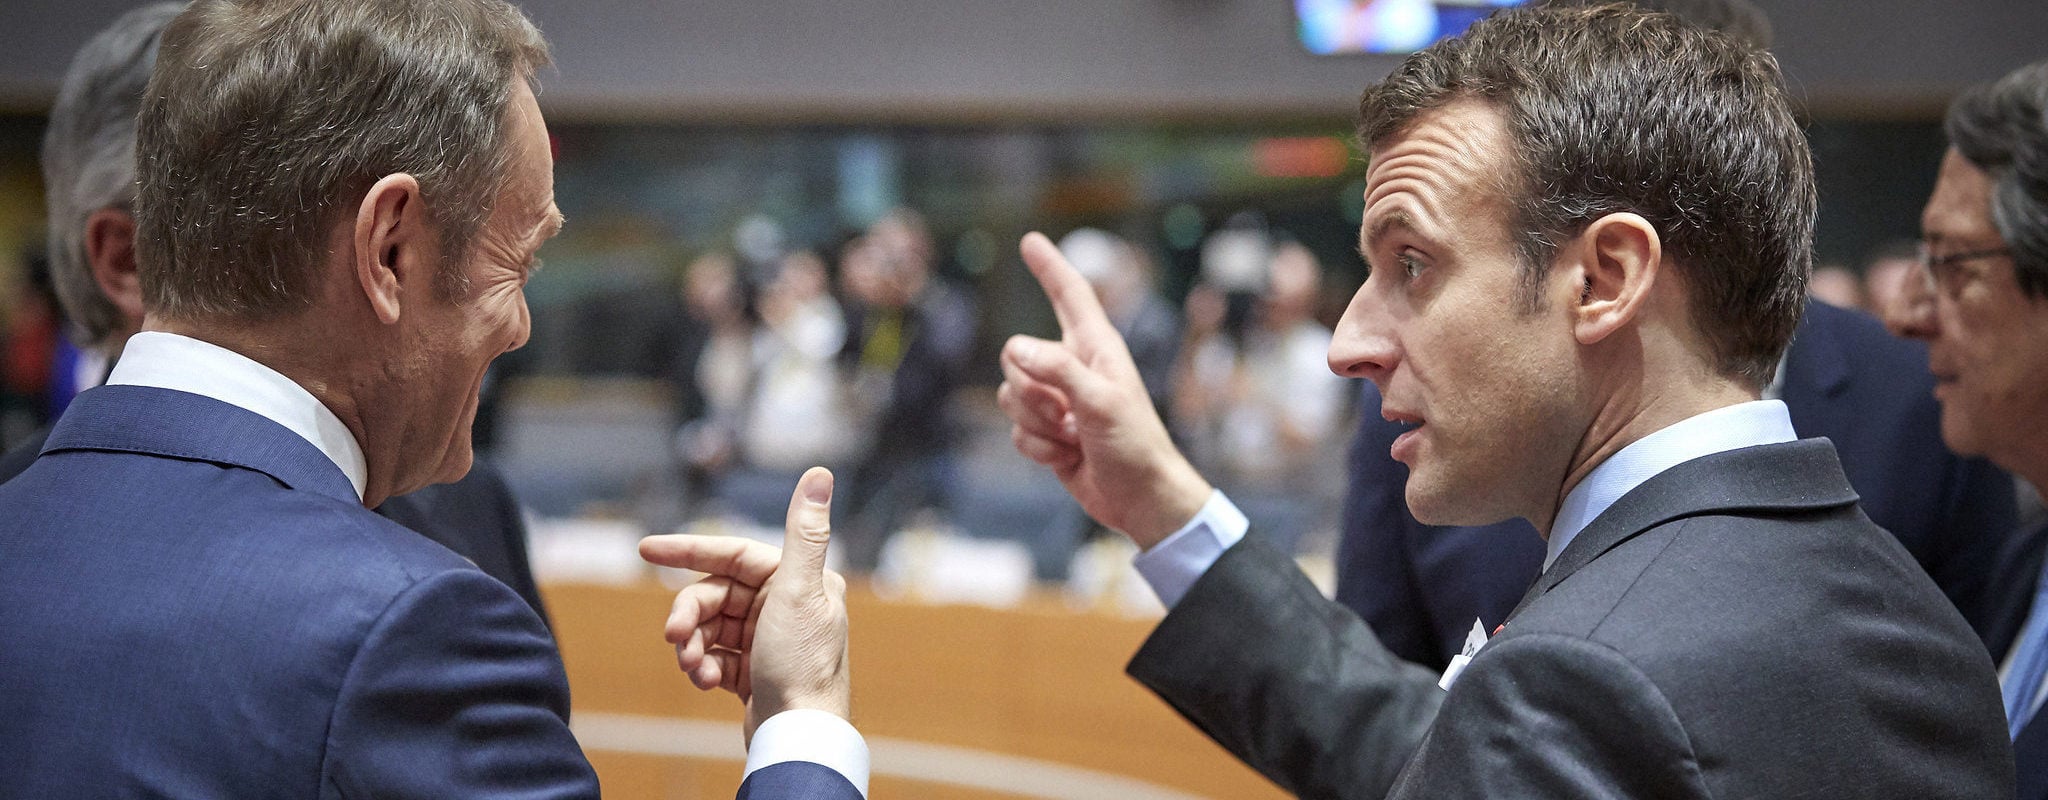 Mardi, suivez l’intervention d’Emmanuel Macron au Parlement européen